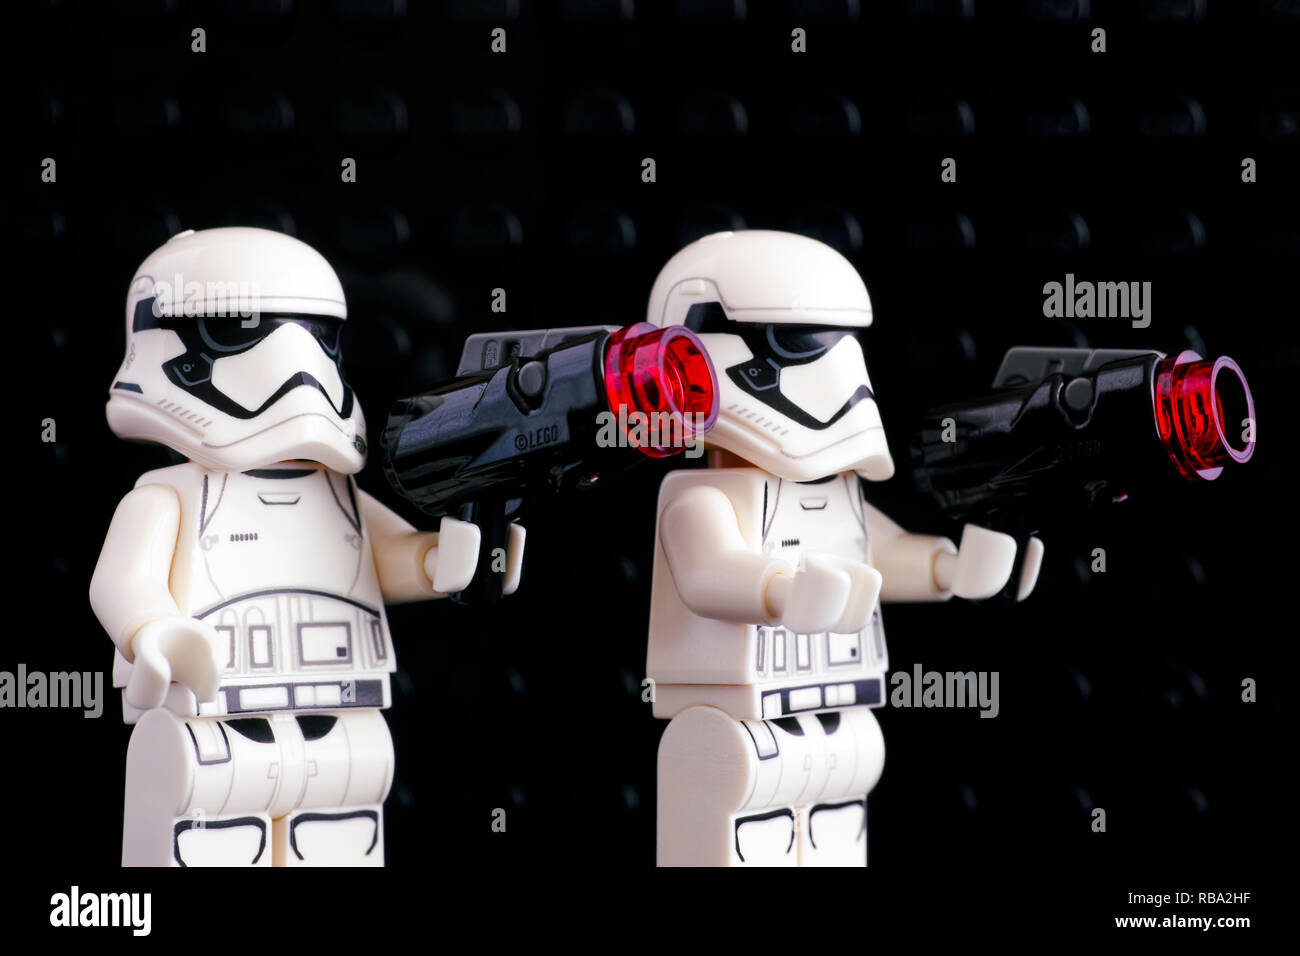 États-Unis: polémique autour d'un pistolet ressemblant… à un jouet Lego  (photo) - Soirmag